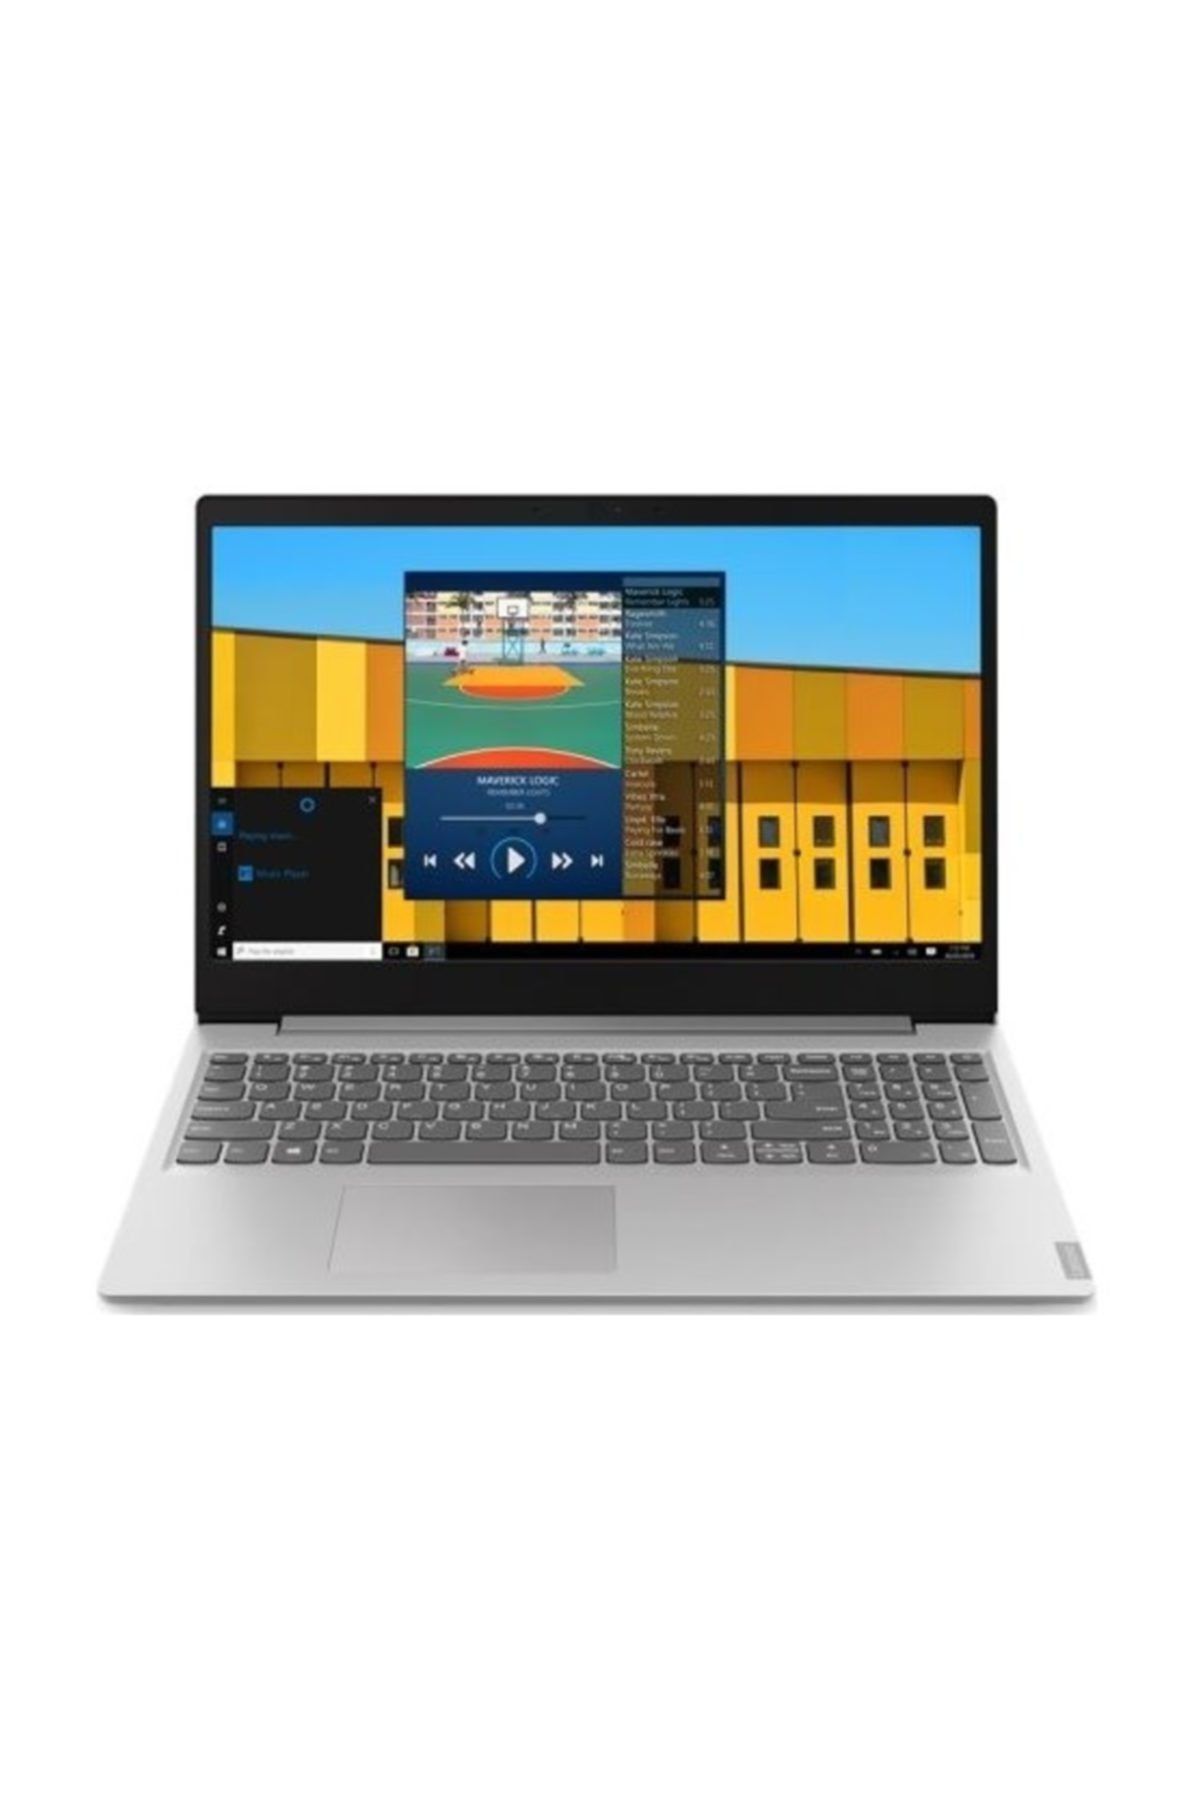 LENOVO Ideapad S145 Intel Celeron 4205u 4gb 128gb Ssd Windows 10 Home 15.6Taşınabilir Bilgisayar 81mv017ktx